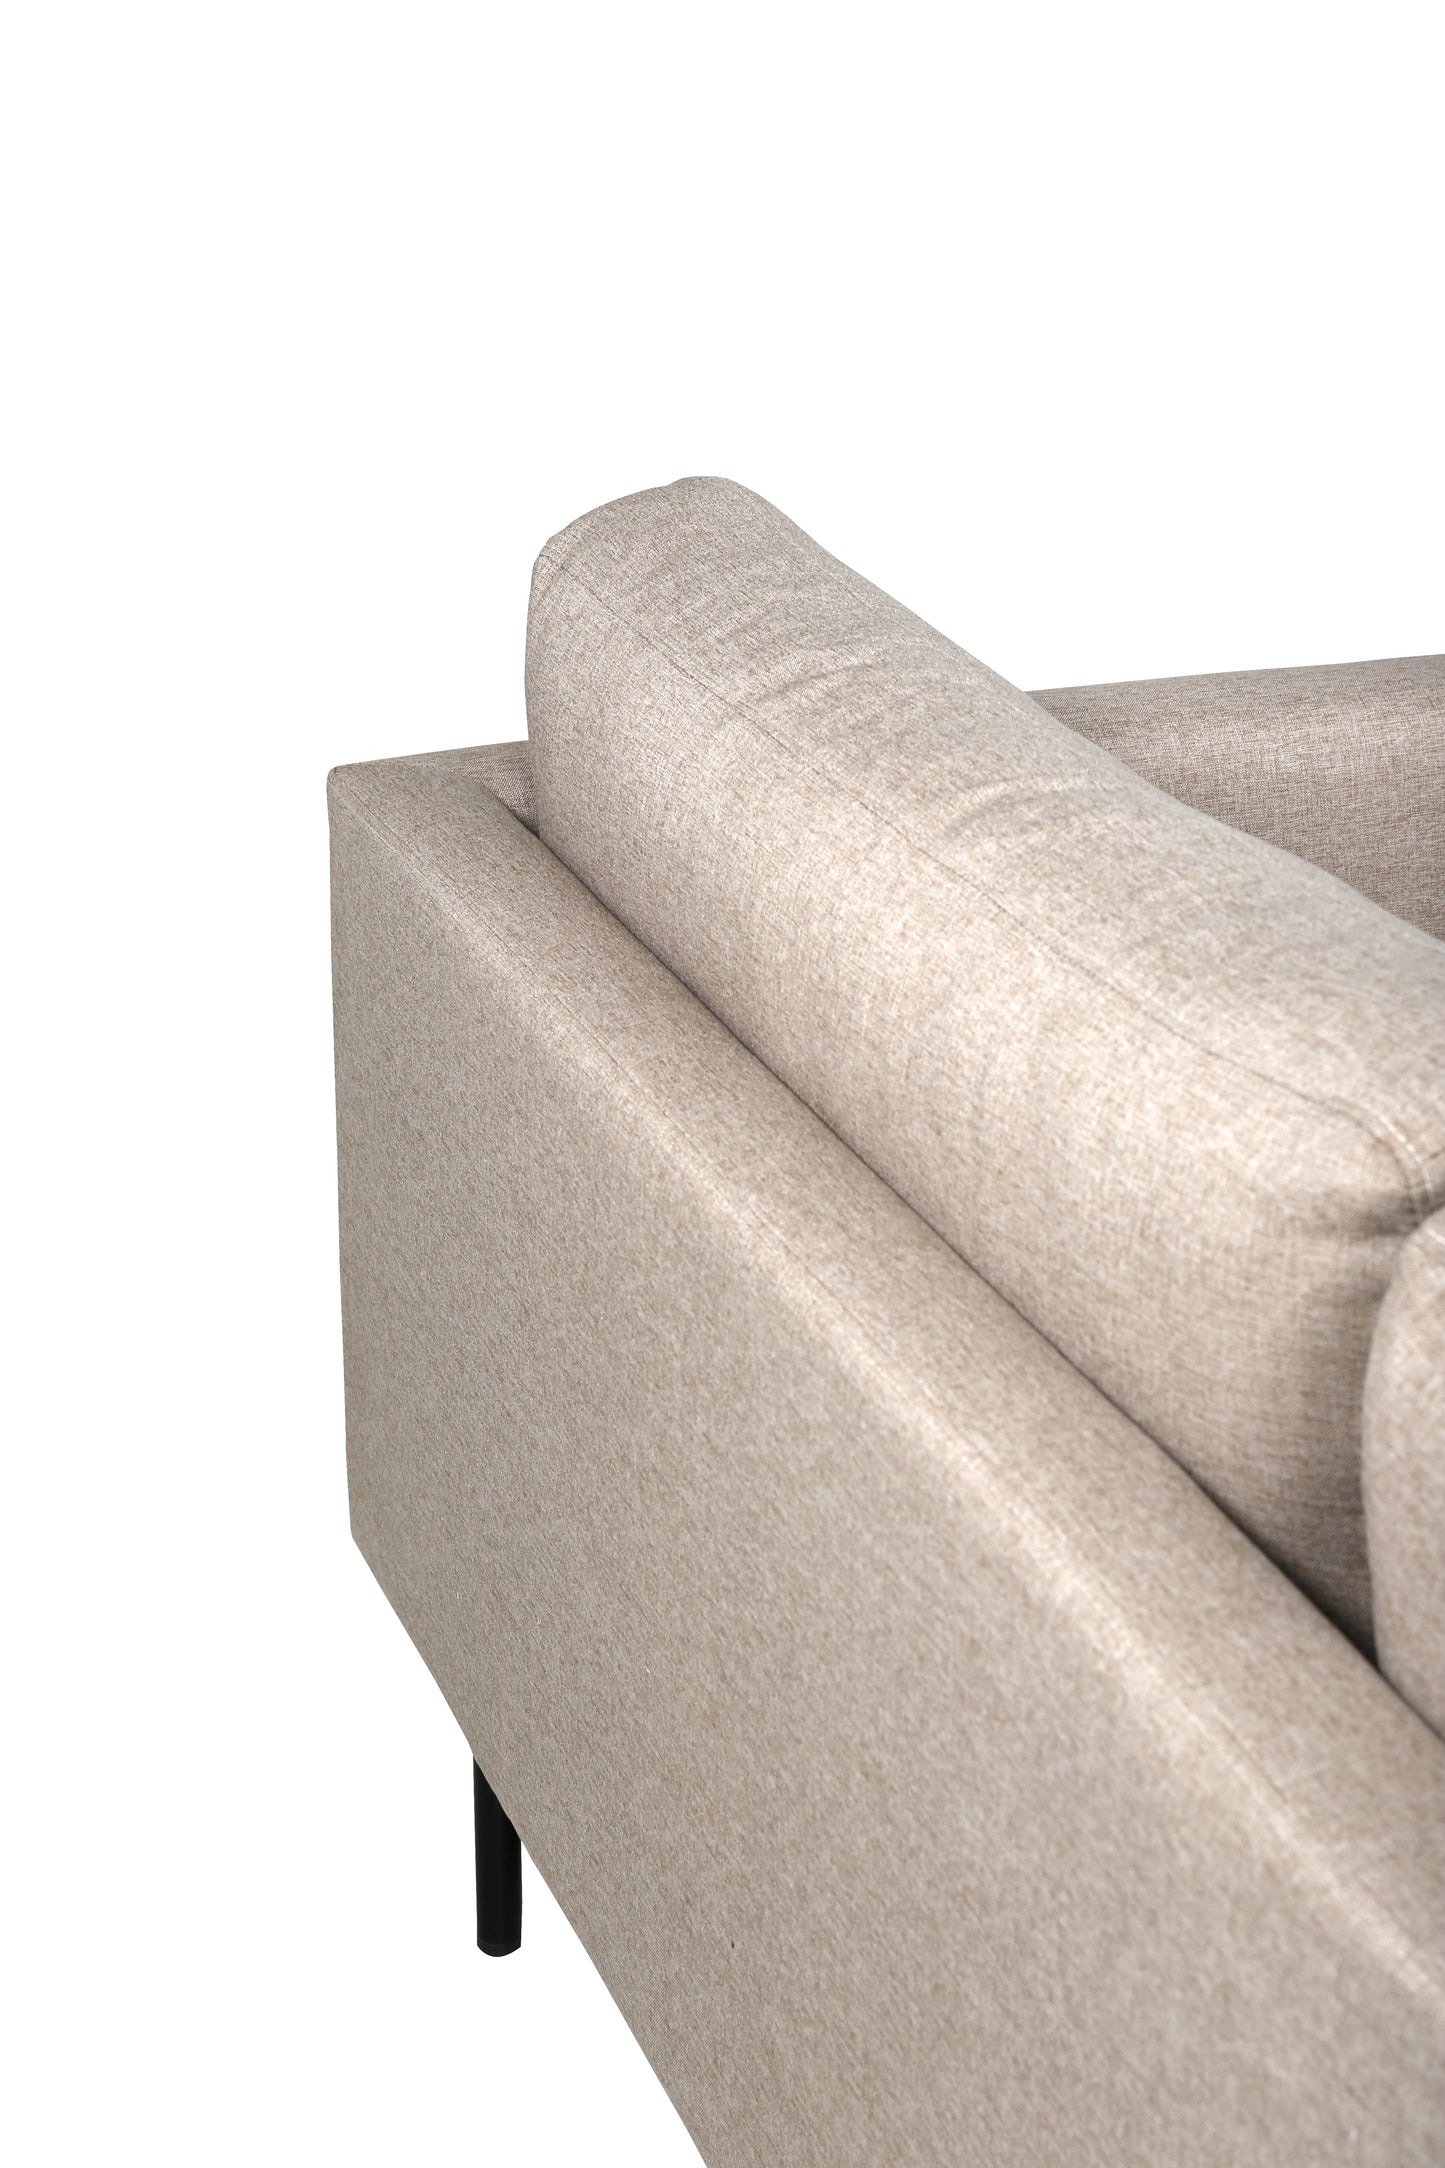 Zoom 2 personers sofa - Sort / beige stof